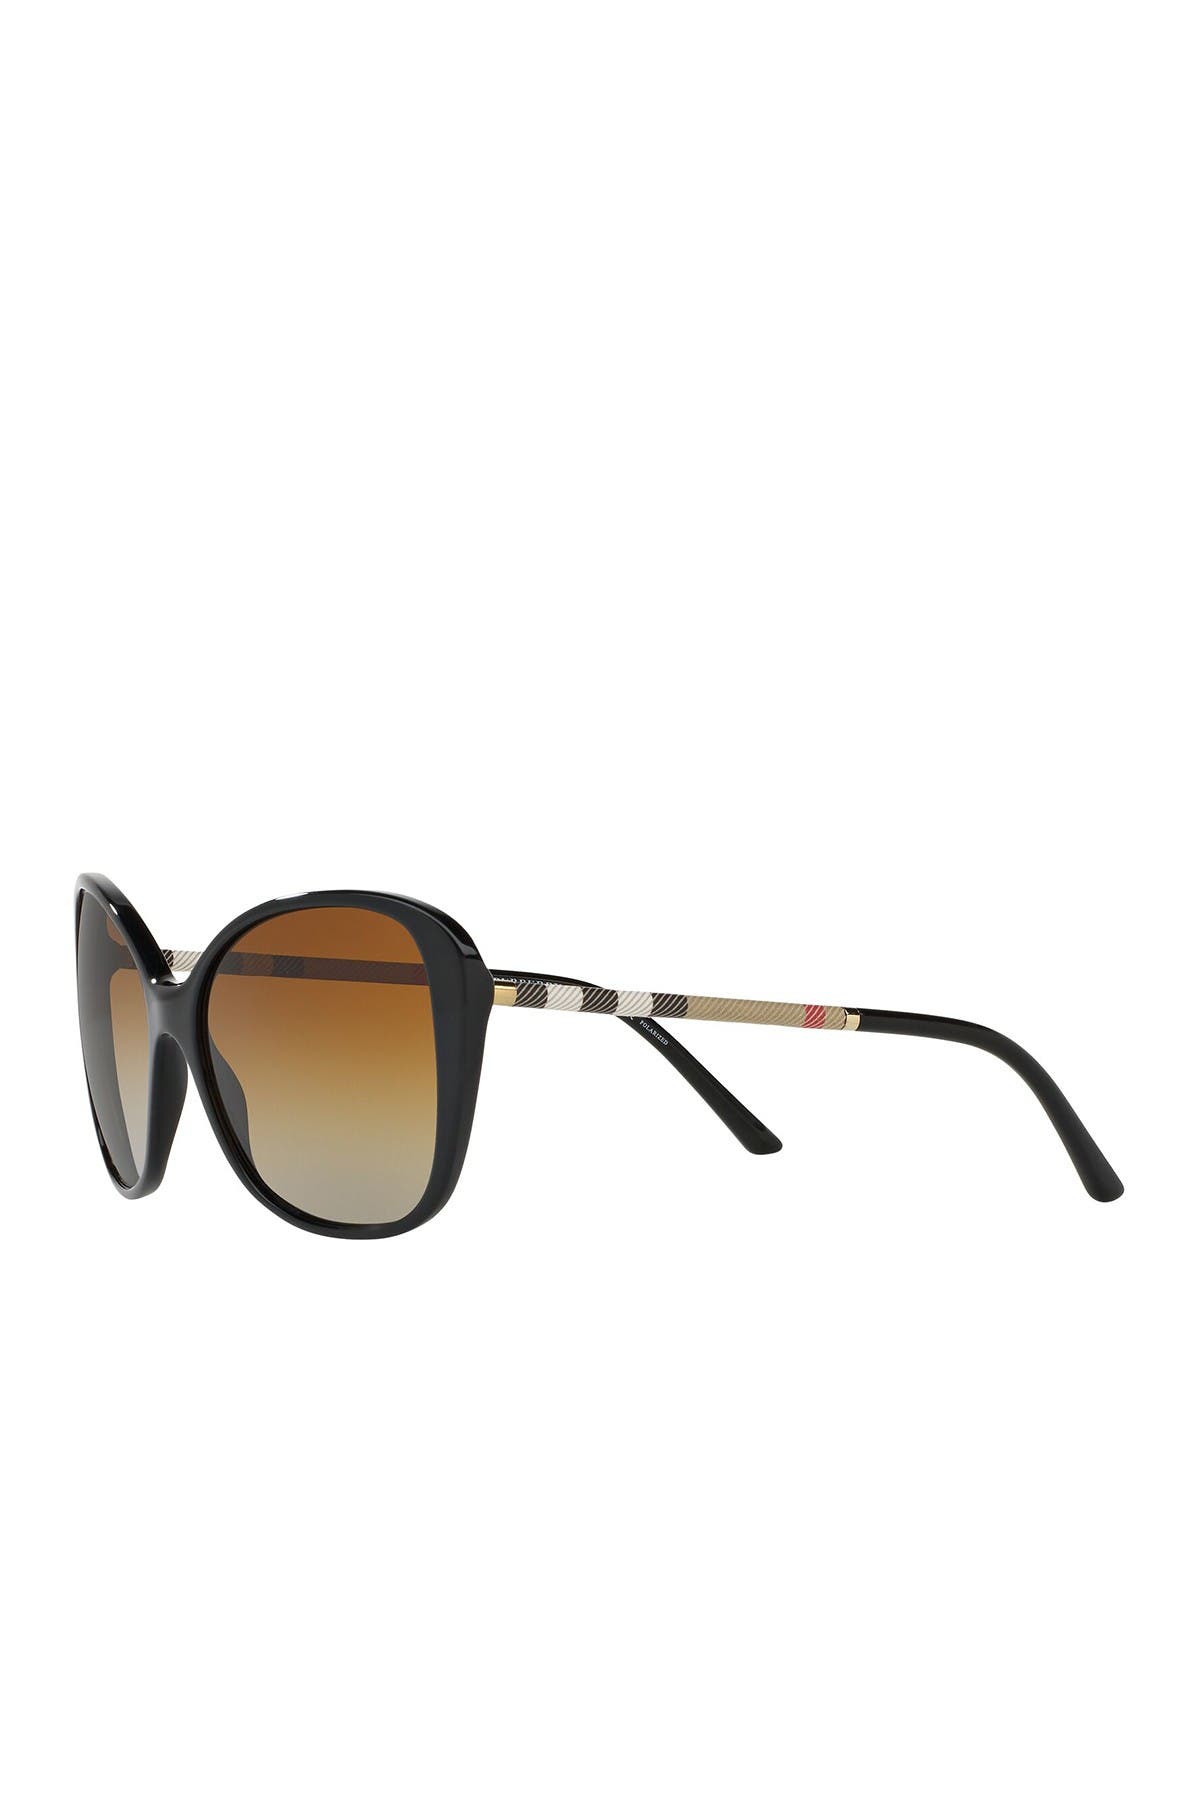 Designer Sunglasses under $100 